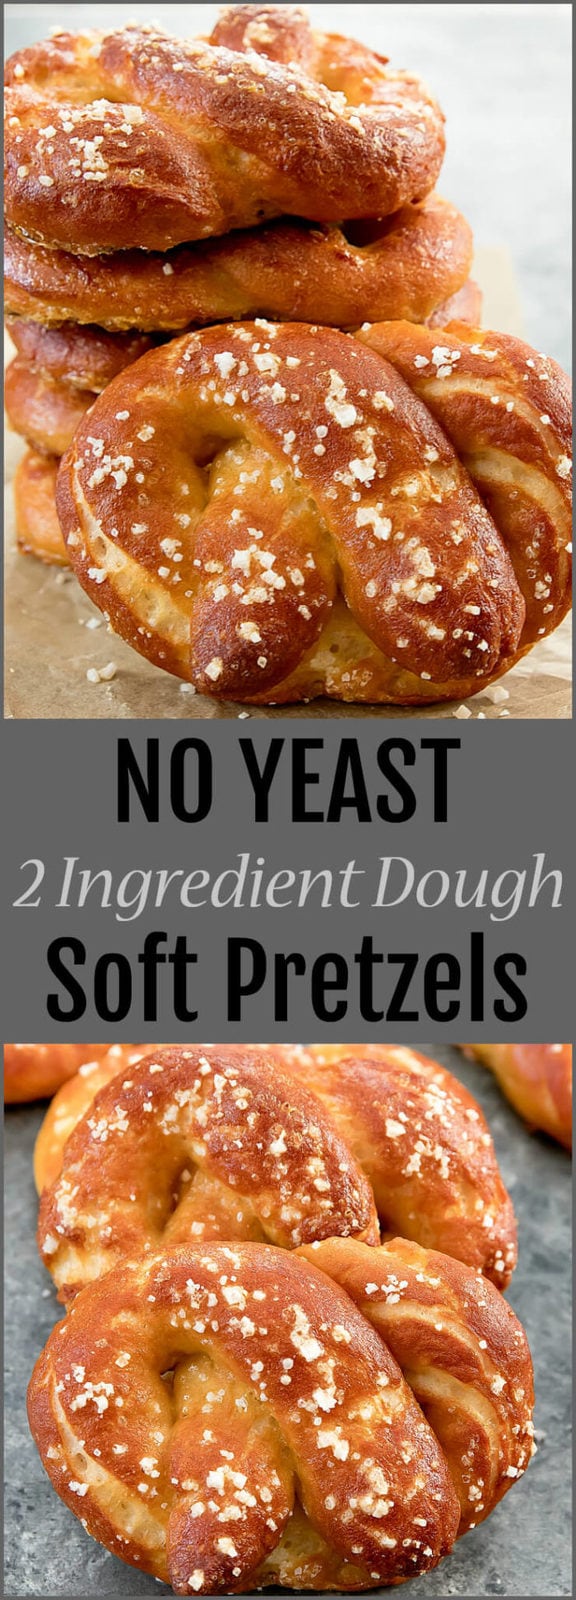 No Yeast (2 Ingredient Dough) Soft Pretzels